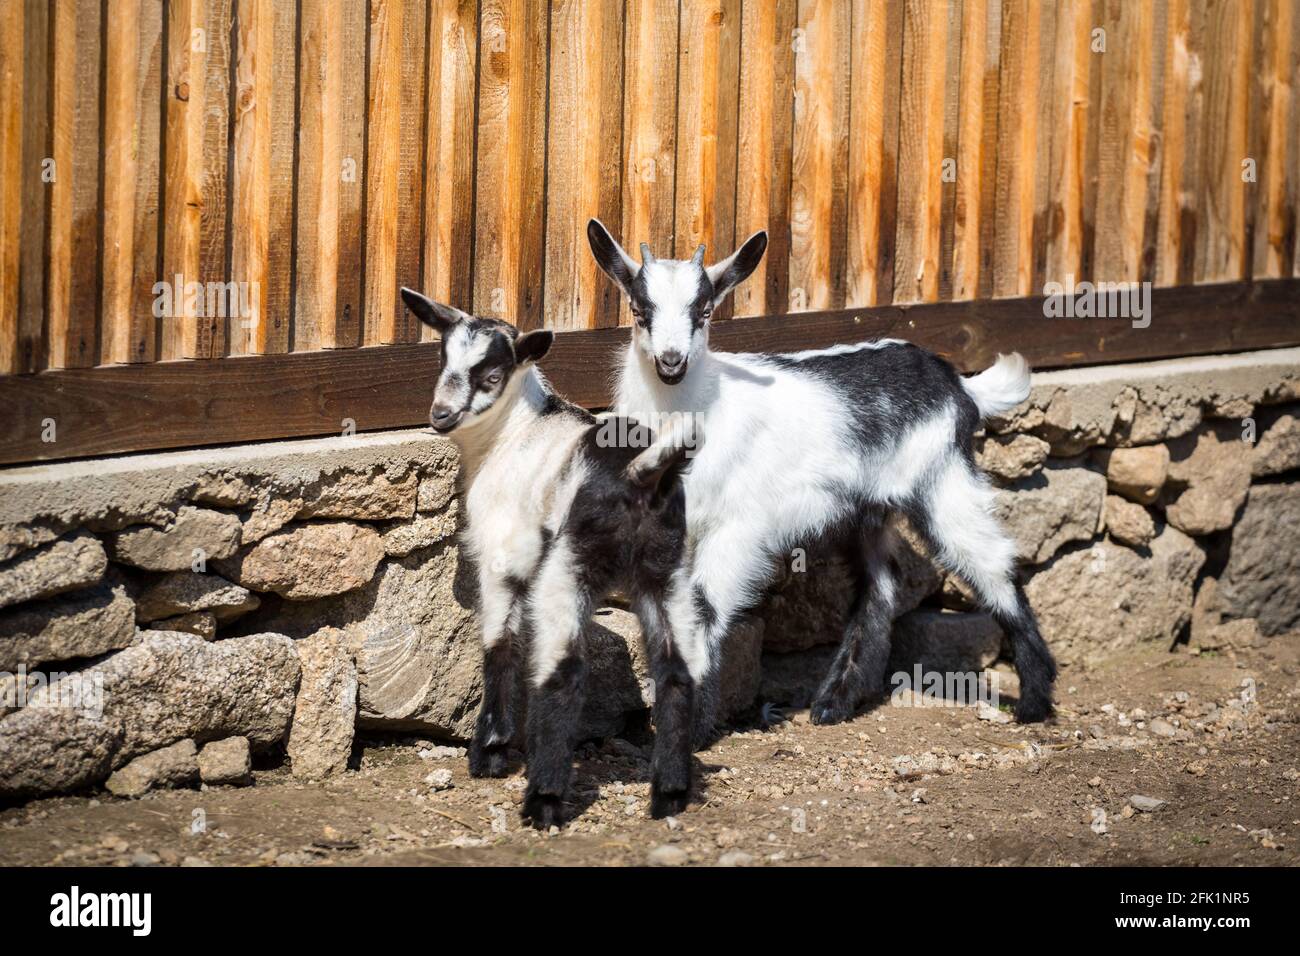 Les chevreaux de la race 'Pfauenziege' (chèvre de paon), une espèce de chèvre autrichienne en voie de disparition Banque D'Images